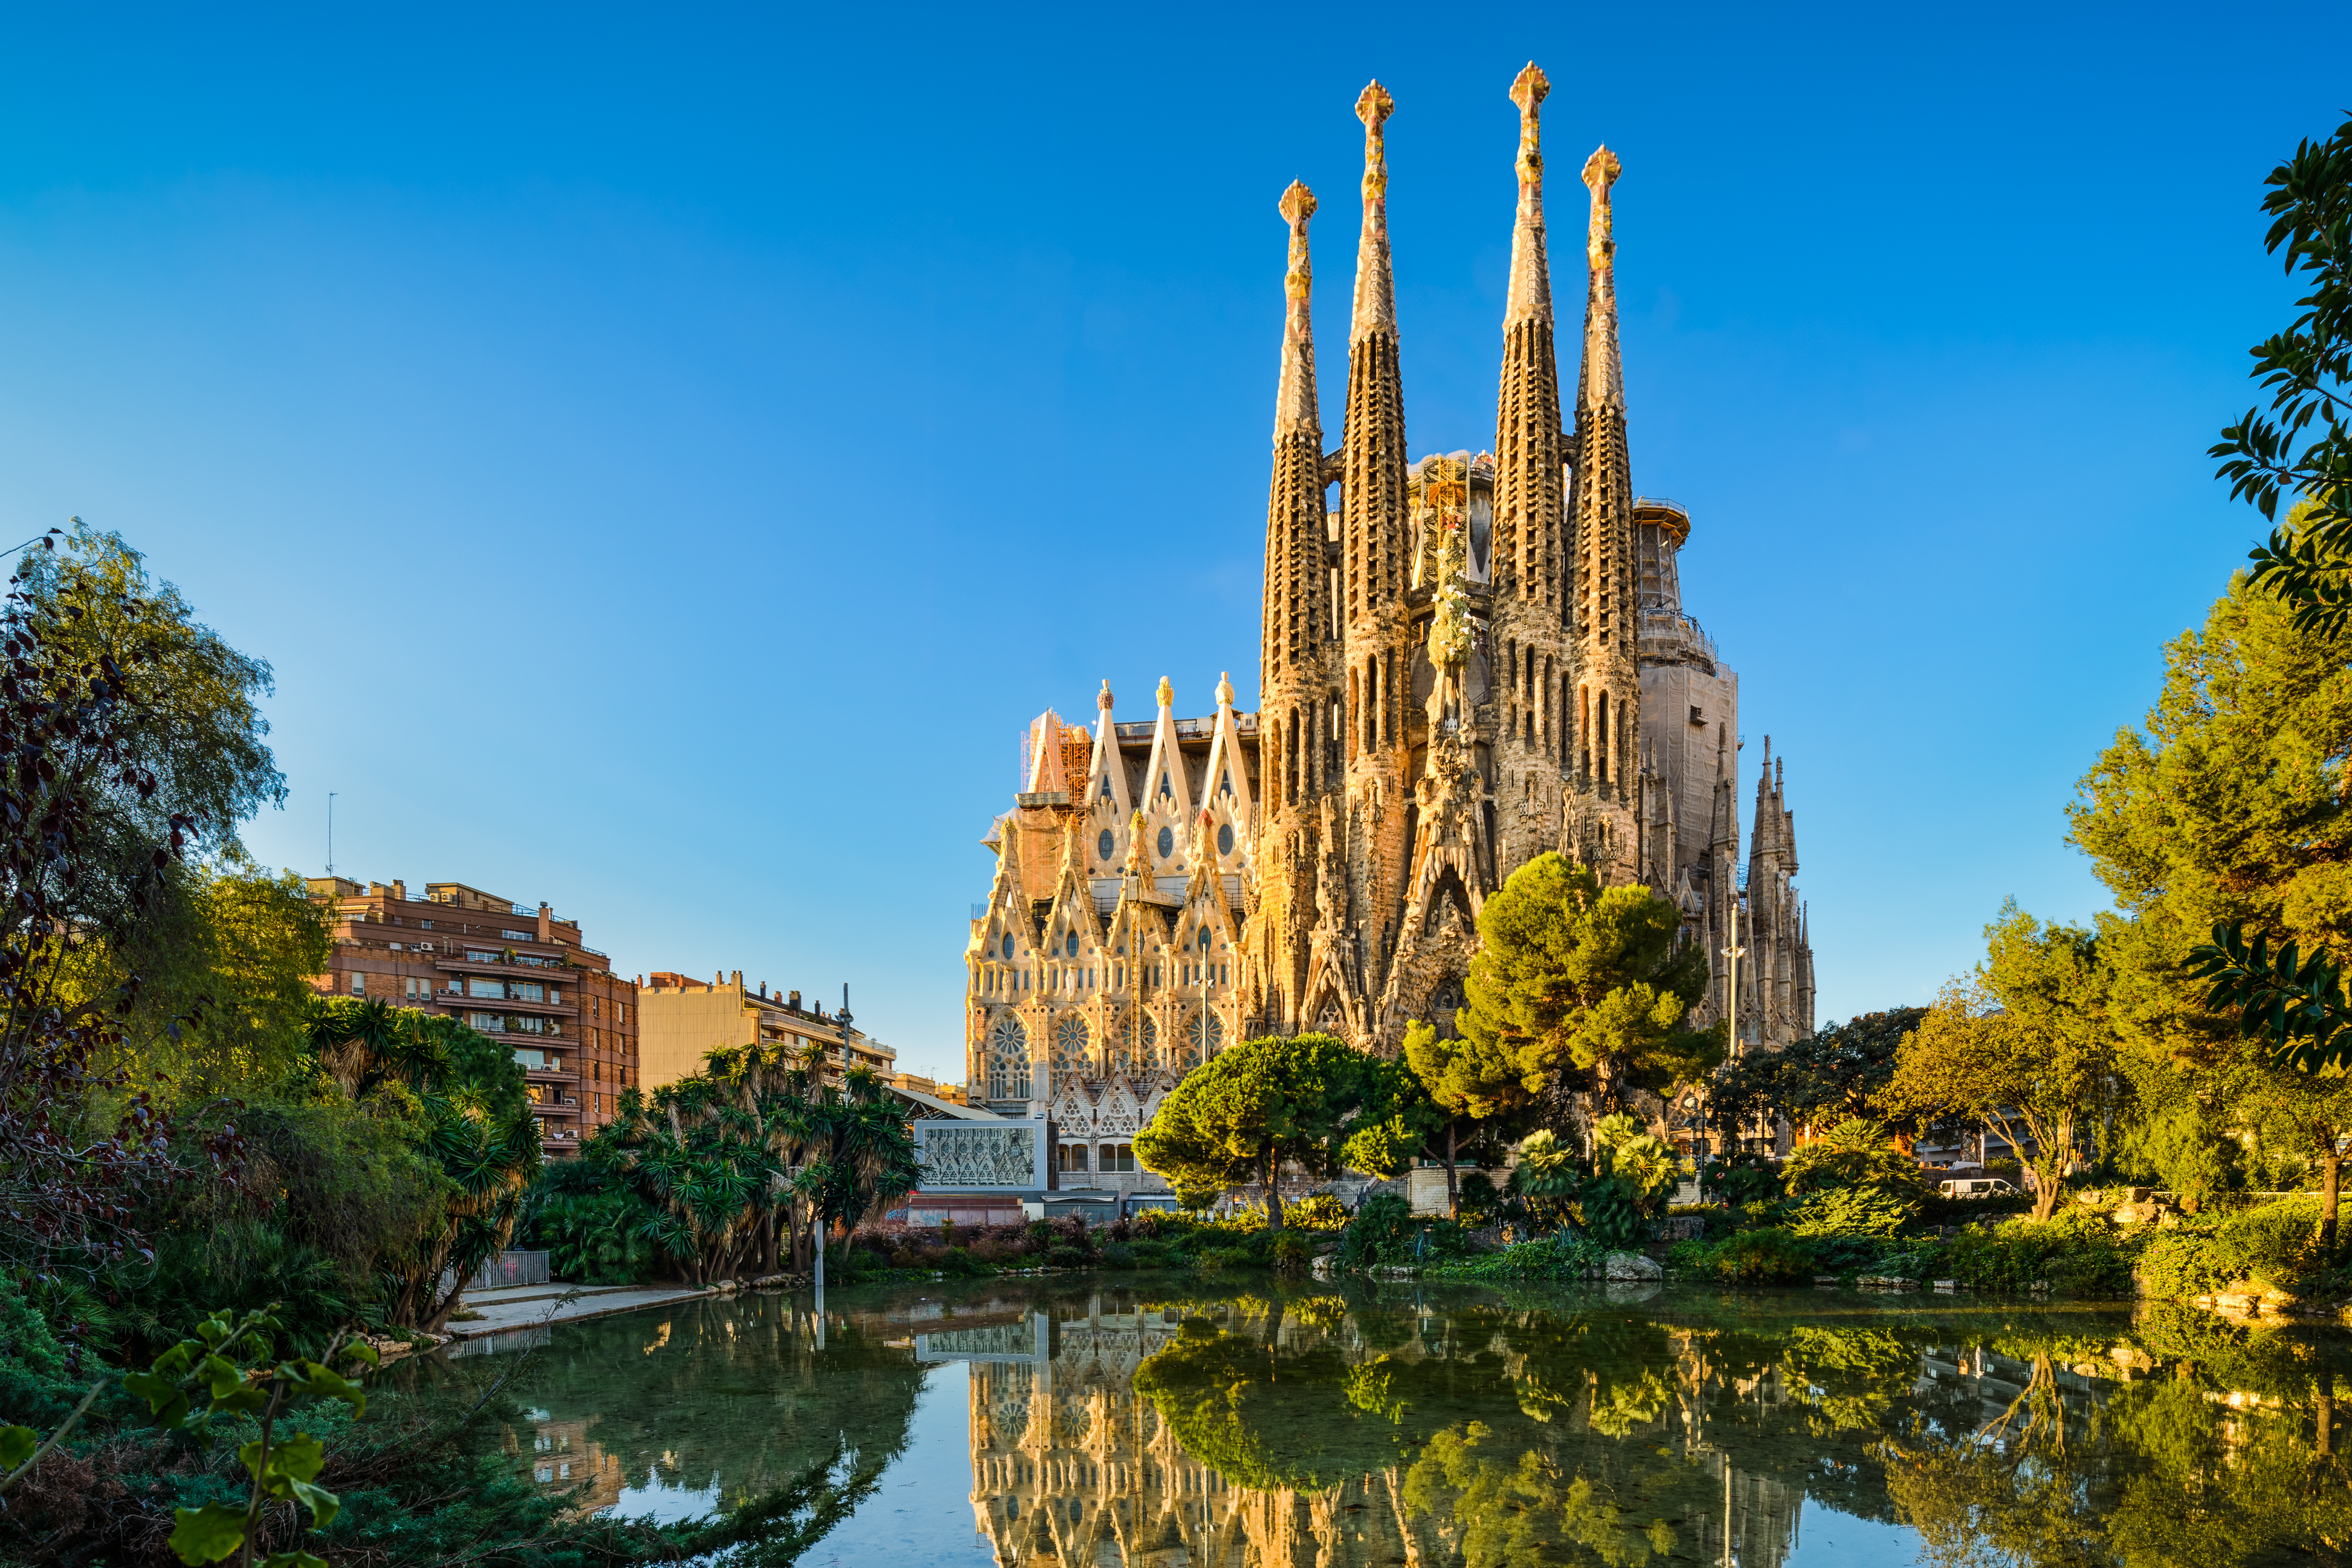 The Sagrada Familia celebrates its anniversary as a basilica